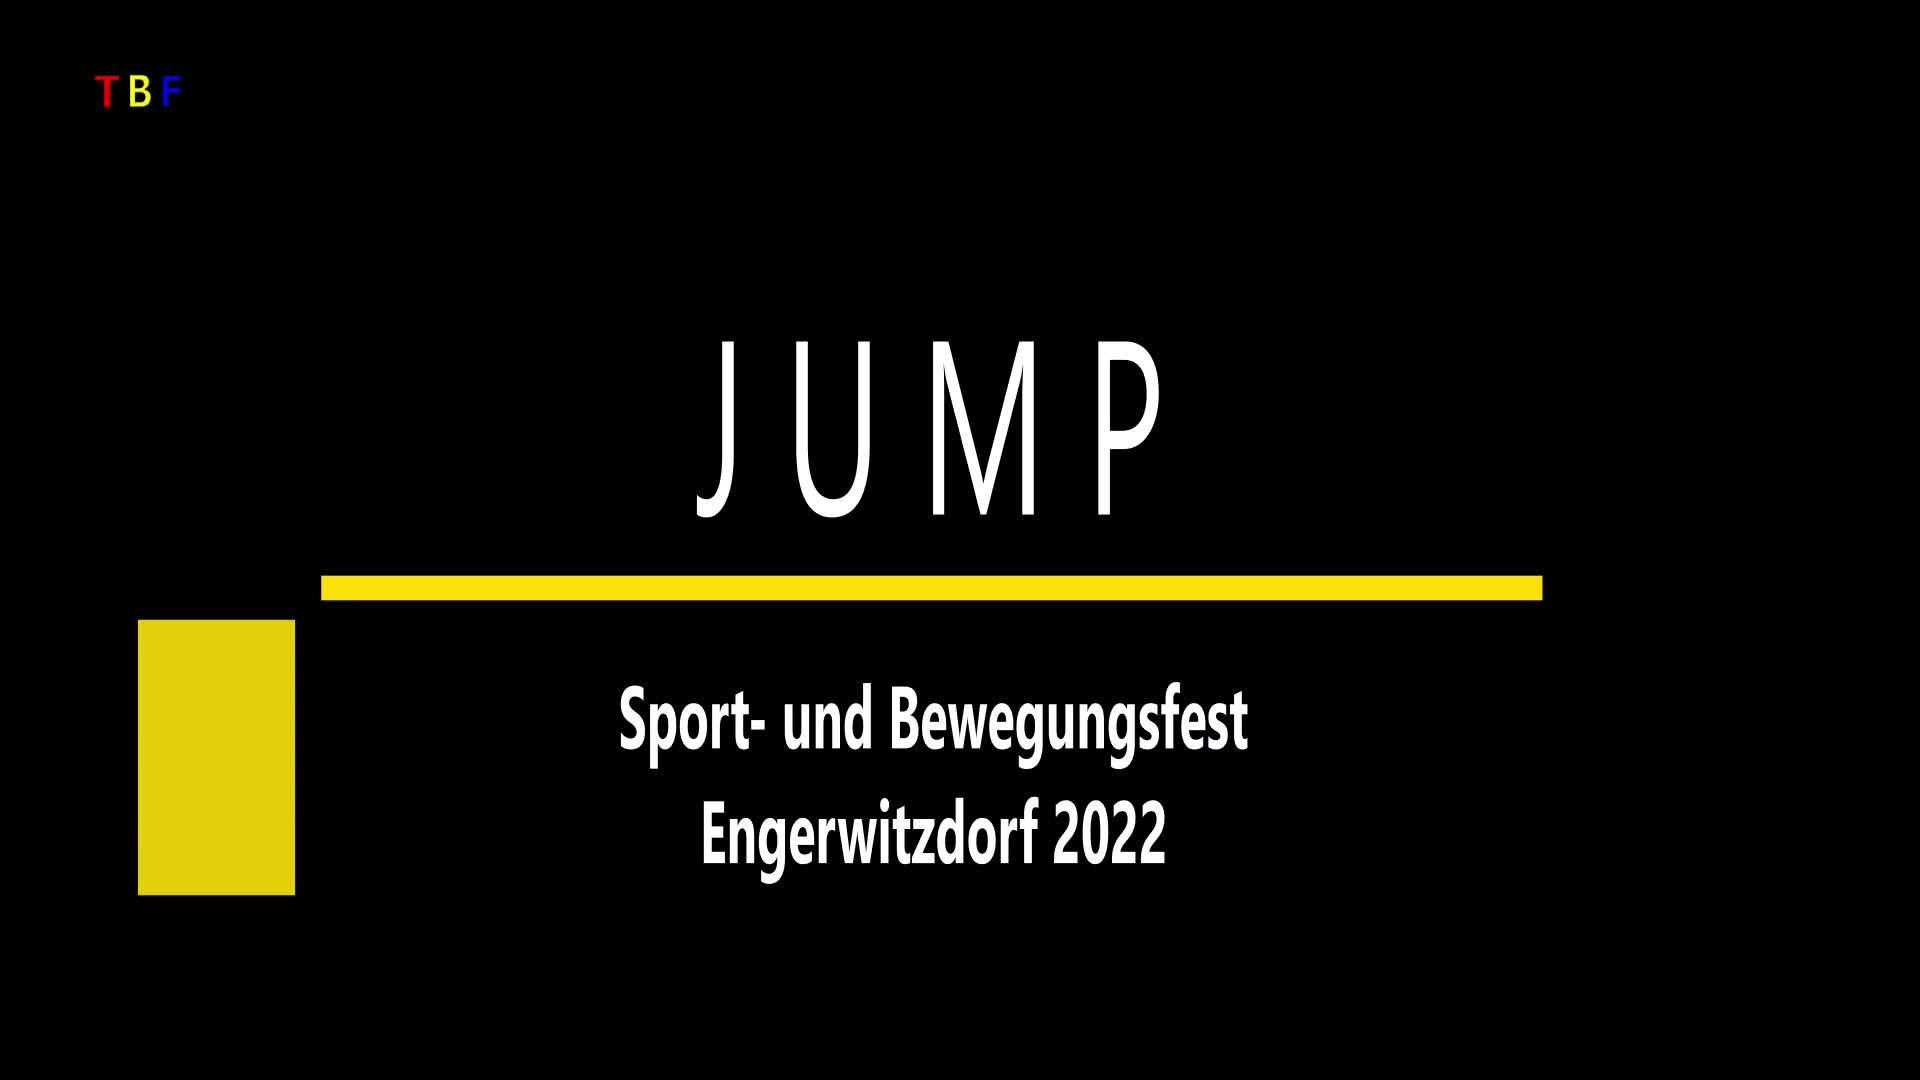 JUMP Sport- und Bewegungsfest 2022